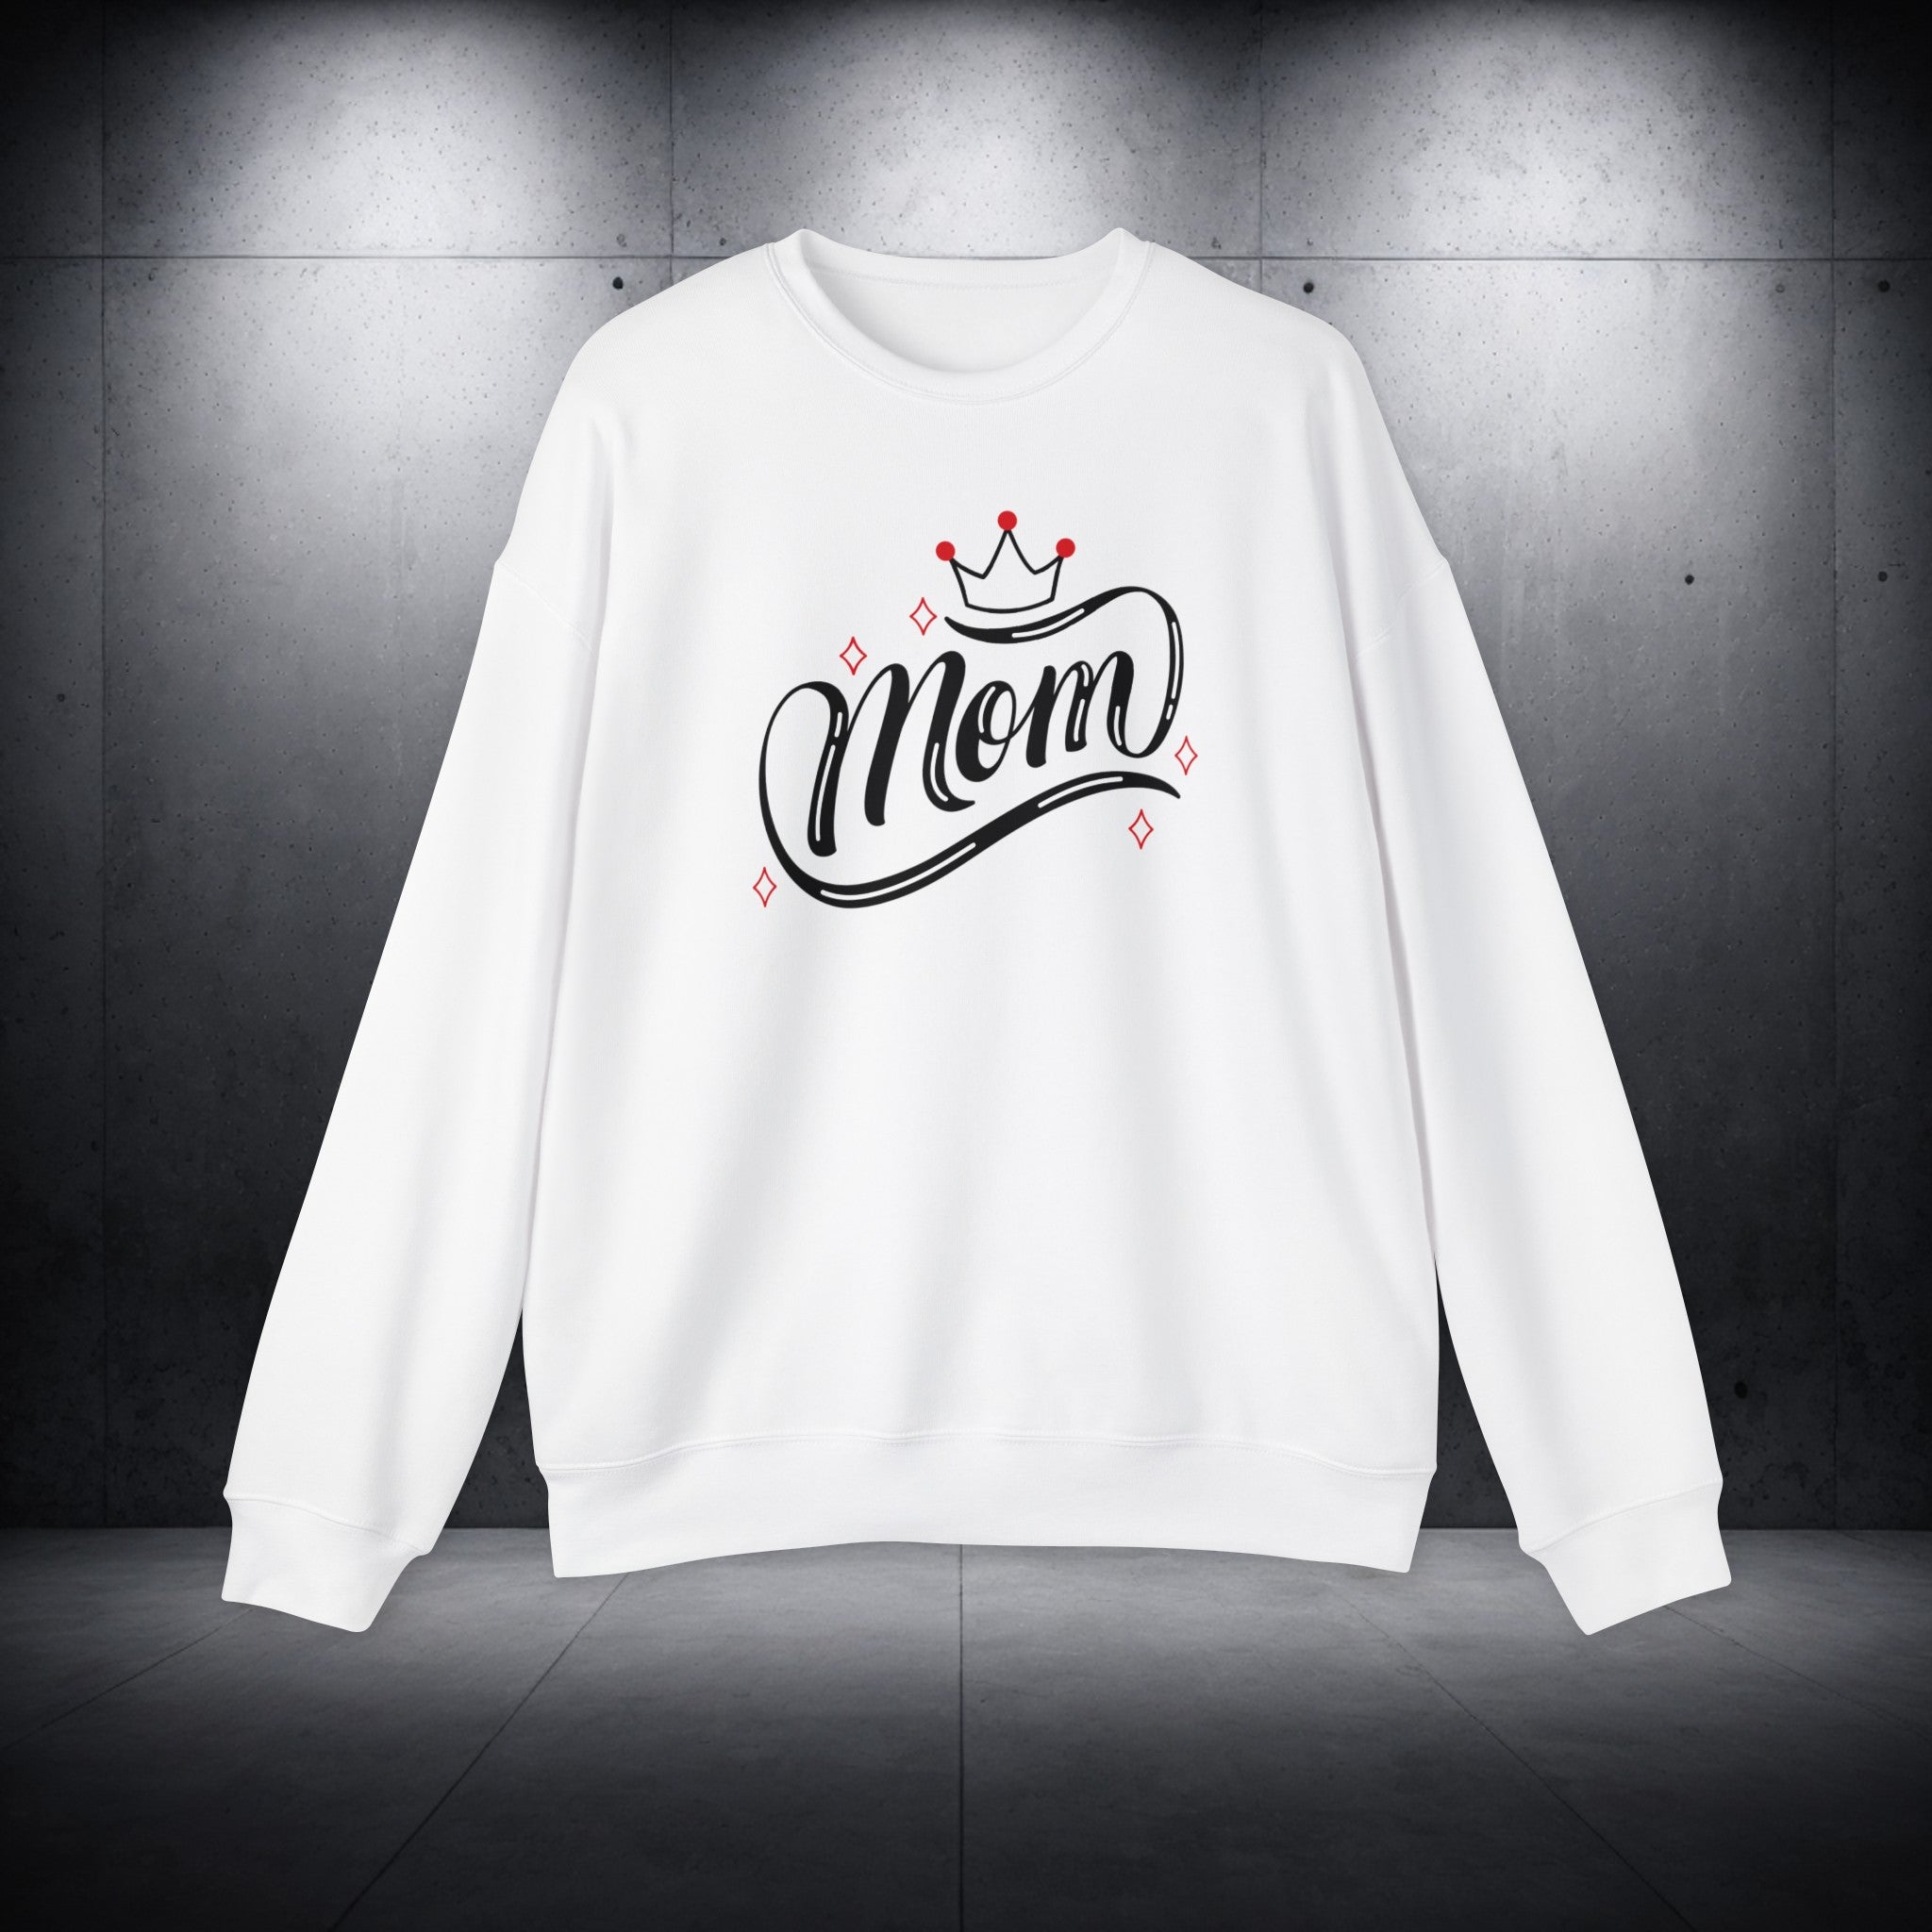 QUEEN MOM - Unisex Drop Shoulder Sweatshirt - Mother’s Day Gift! 🎁